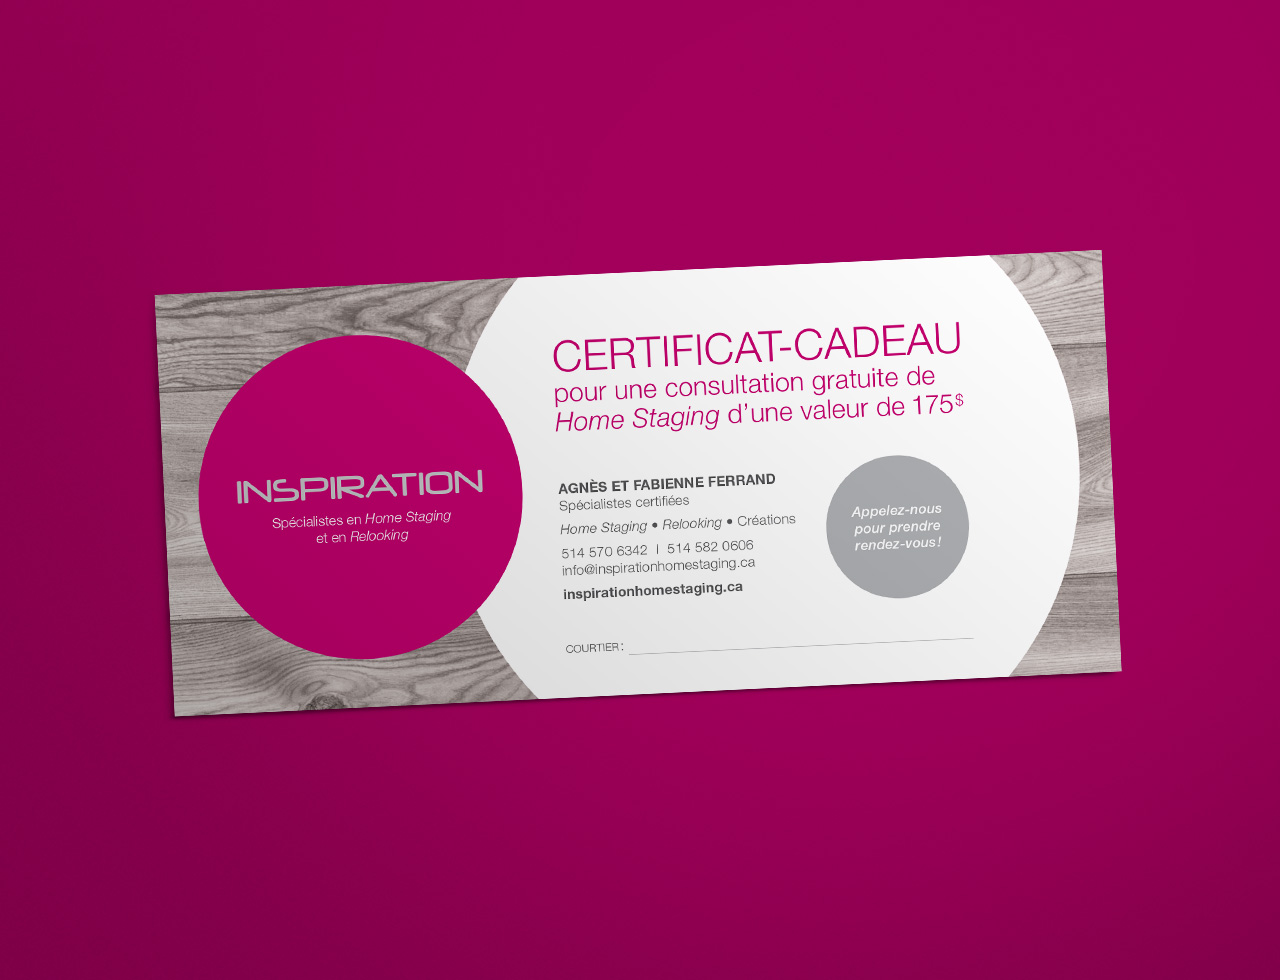 MlleRouge_Inspiration_certificat